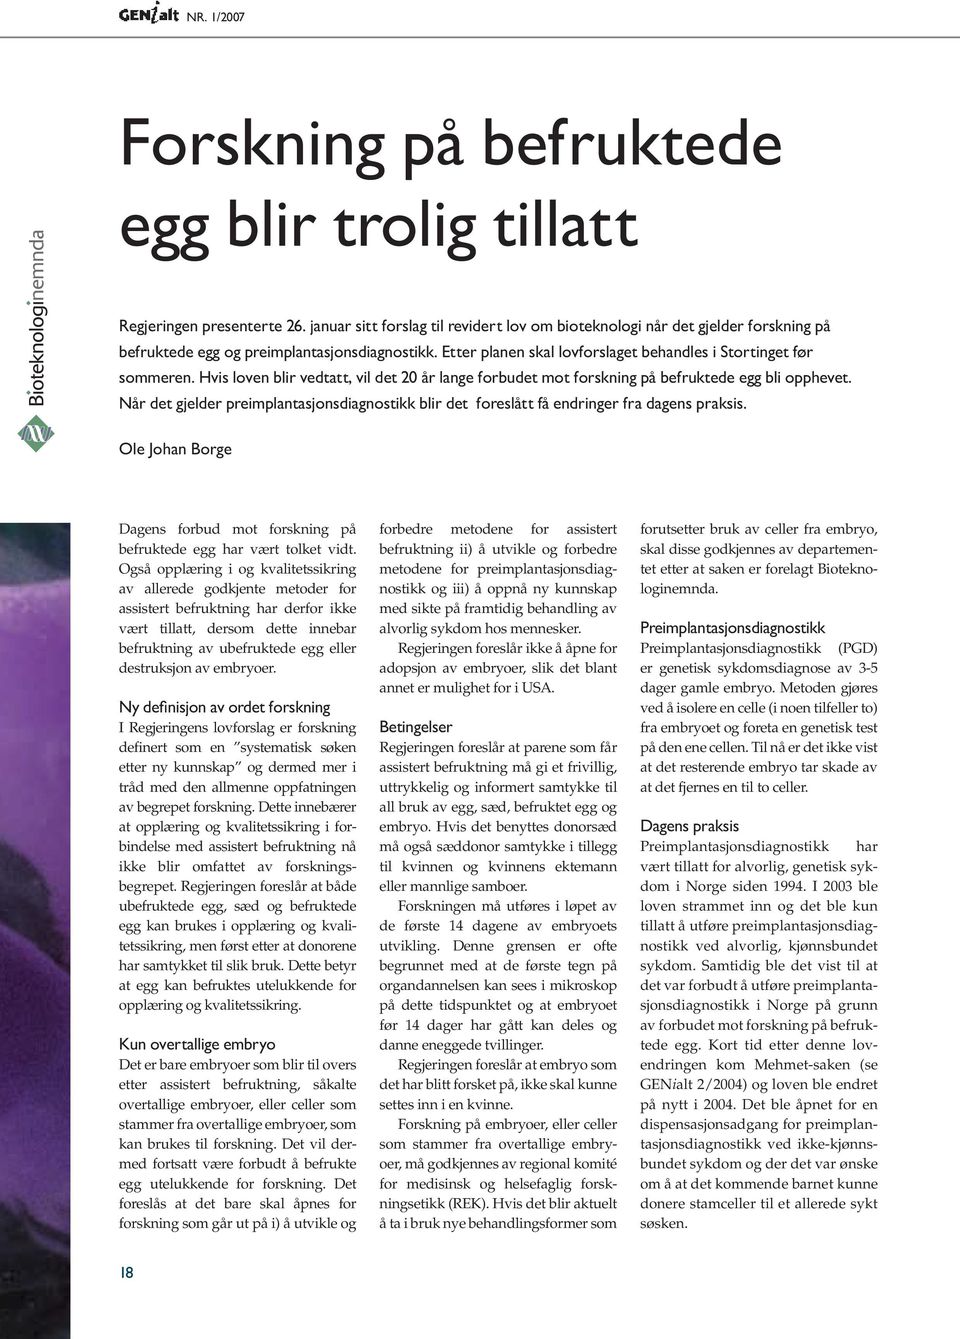 Hvis loven blir vedtatt, vil det 20 år lange forbudet mot forskning på befruktede egg bli opphevet. Når det gjelder preimplantasjonsdiagnostikk blir det foreslått få endringer fra dagens praksis.